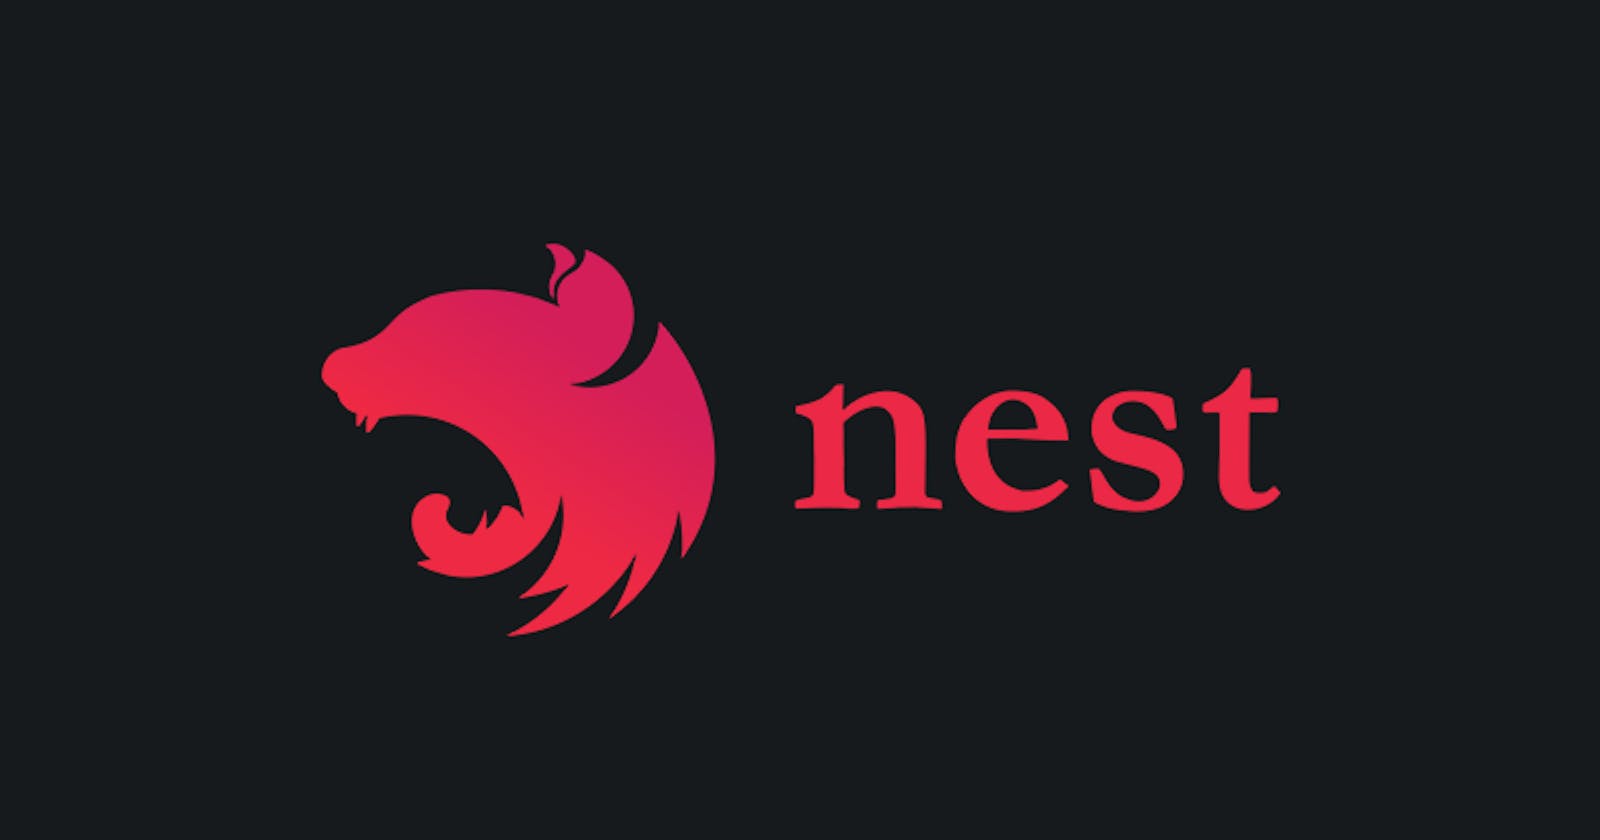 NestJs — A Node.js web framework